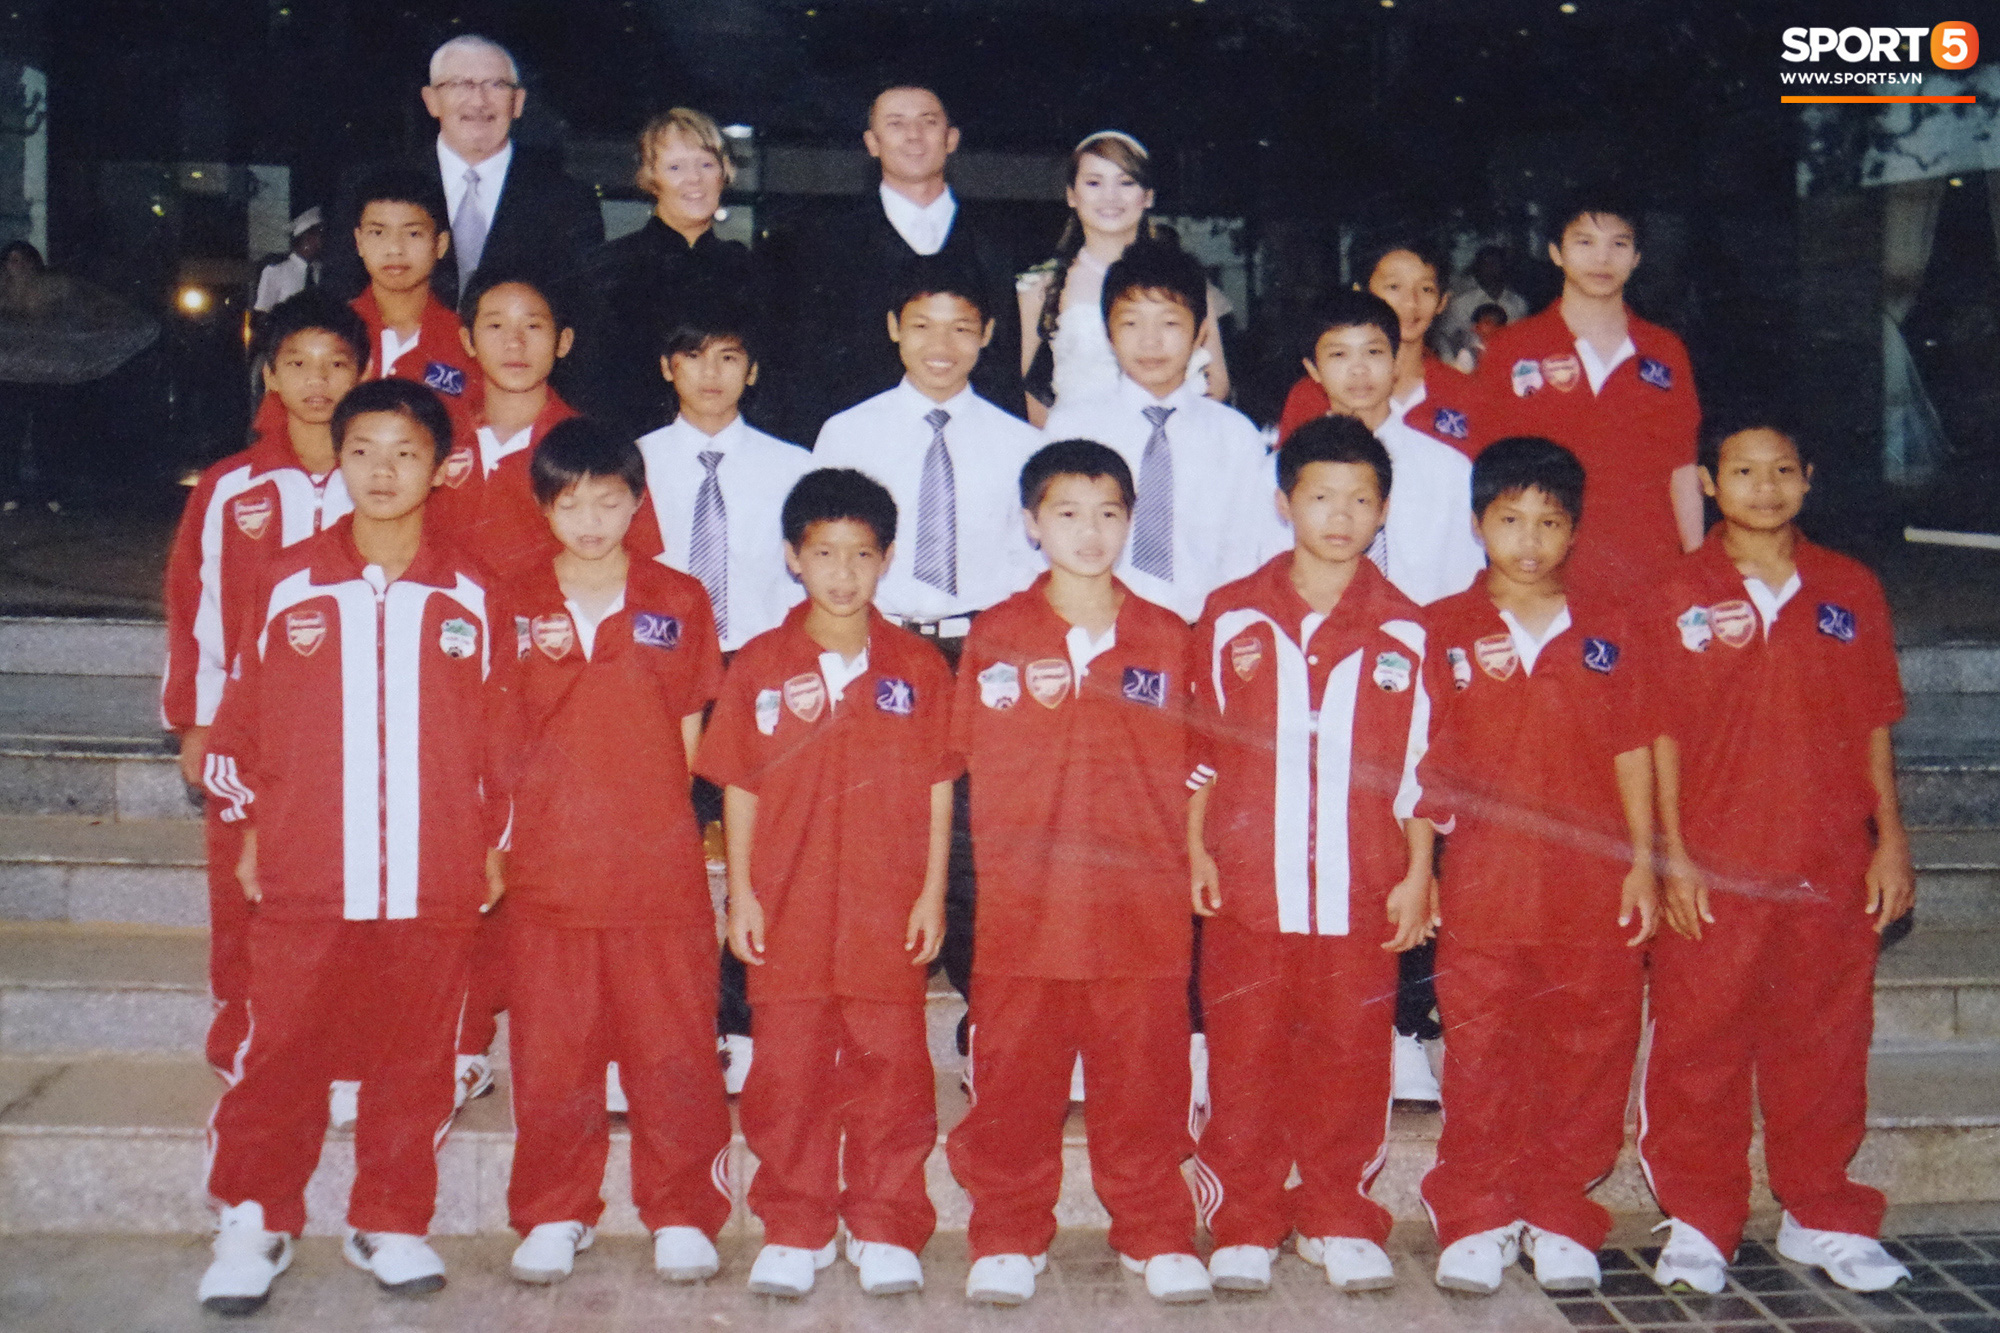 Trào lưu “trở về tuổi thơ” của các cầu thủ, thử thách kiến thức fan bóng đá Việt Nam - Ảnh 3.